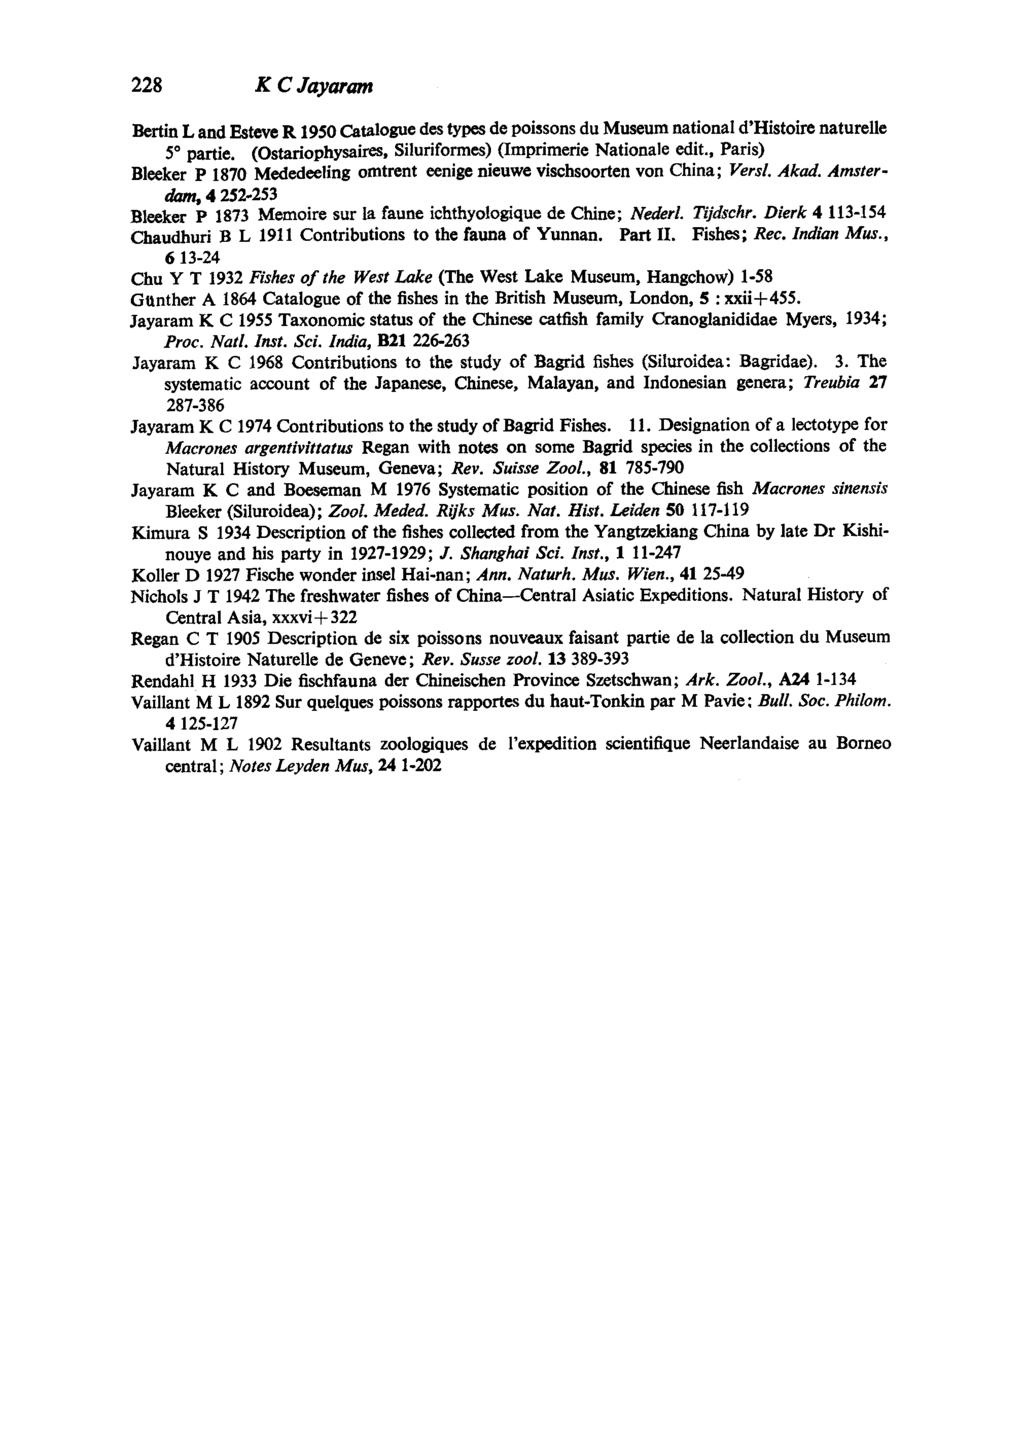 228 KCJayaram Bertin L and Esteve R 1950Catalogue des types de poissons du Museum national d'histoire naturelle 5 partie. (Ostariophysaires, Siluriformes) (Imprimerie Nationale edit.